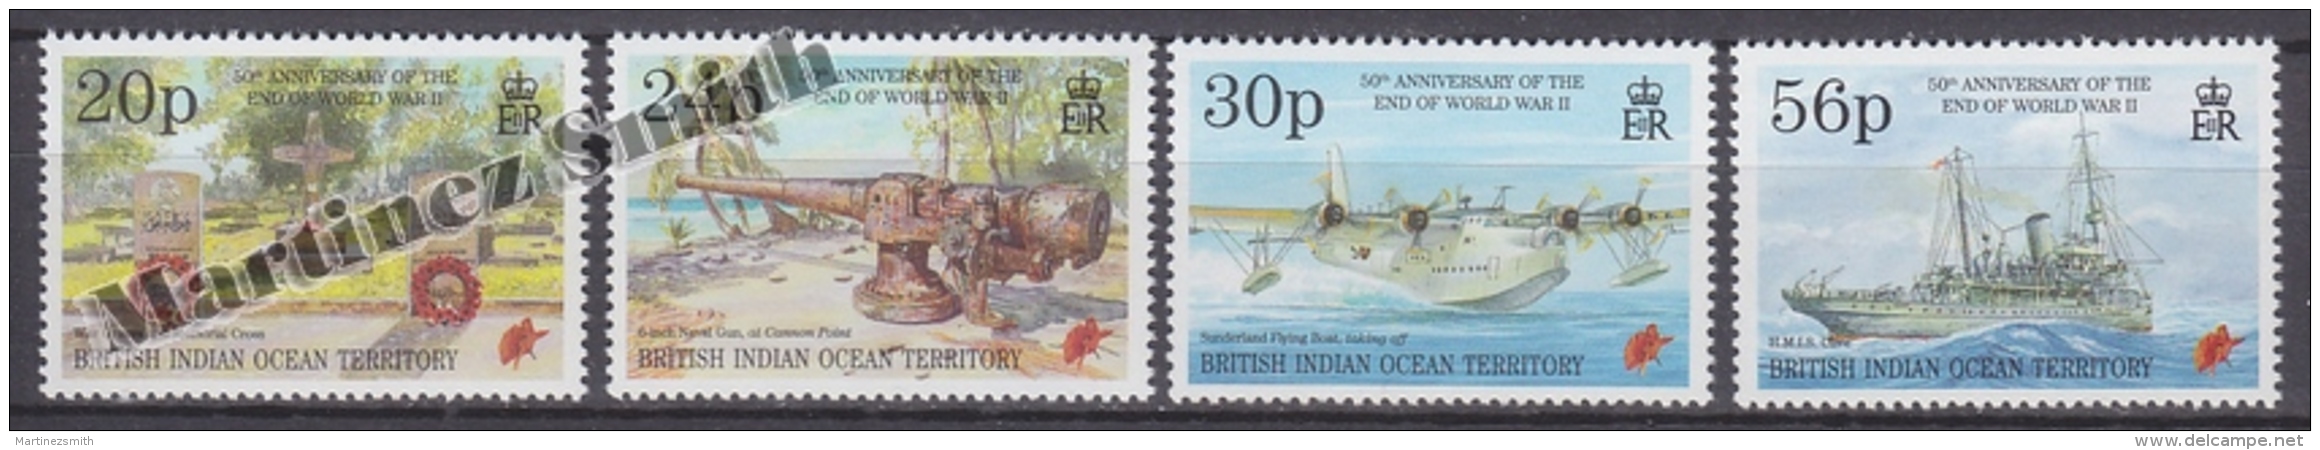 British Indian Ocean 1995 Yvert 165- 168, 50th Anniversary Of The End Of World War II - MNH - Britisches Territorium Im Indischen Ozean